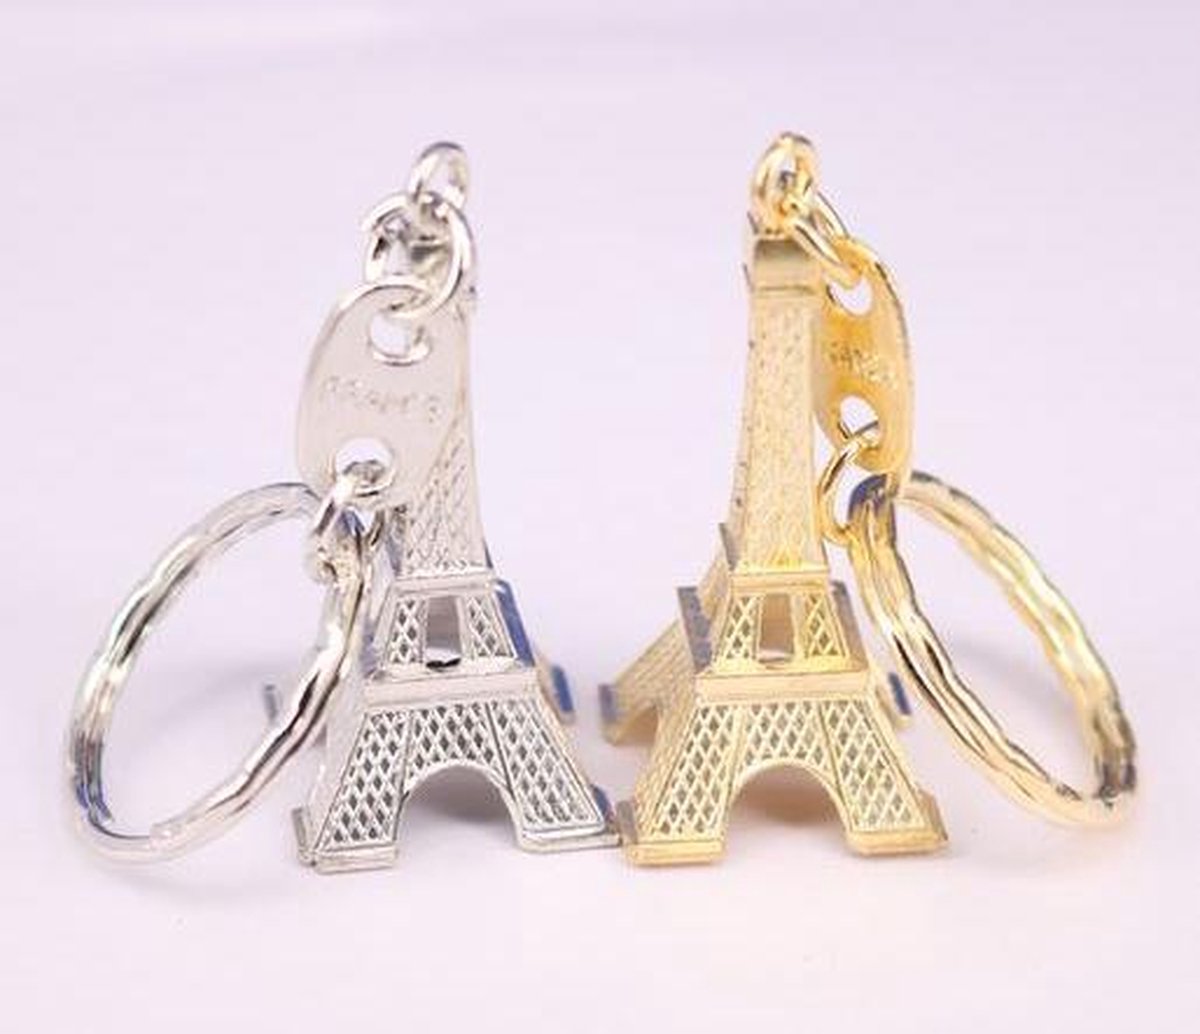 2 stuks sleutelhanger Eiffeltoren - Parijs zilverkleurig en goudkleurig bol.com